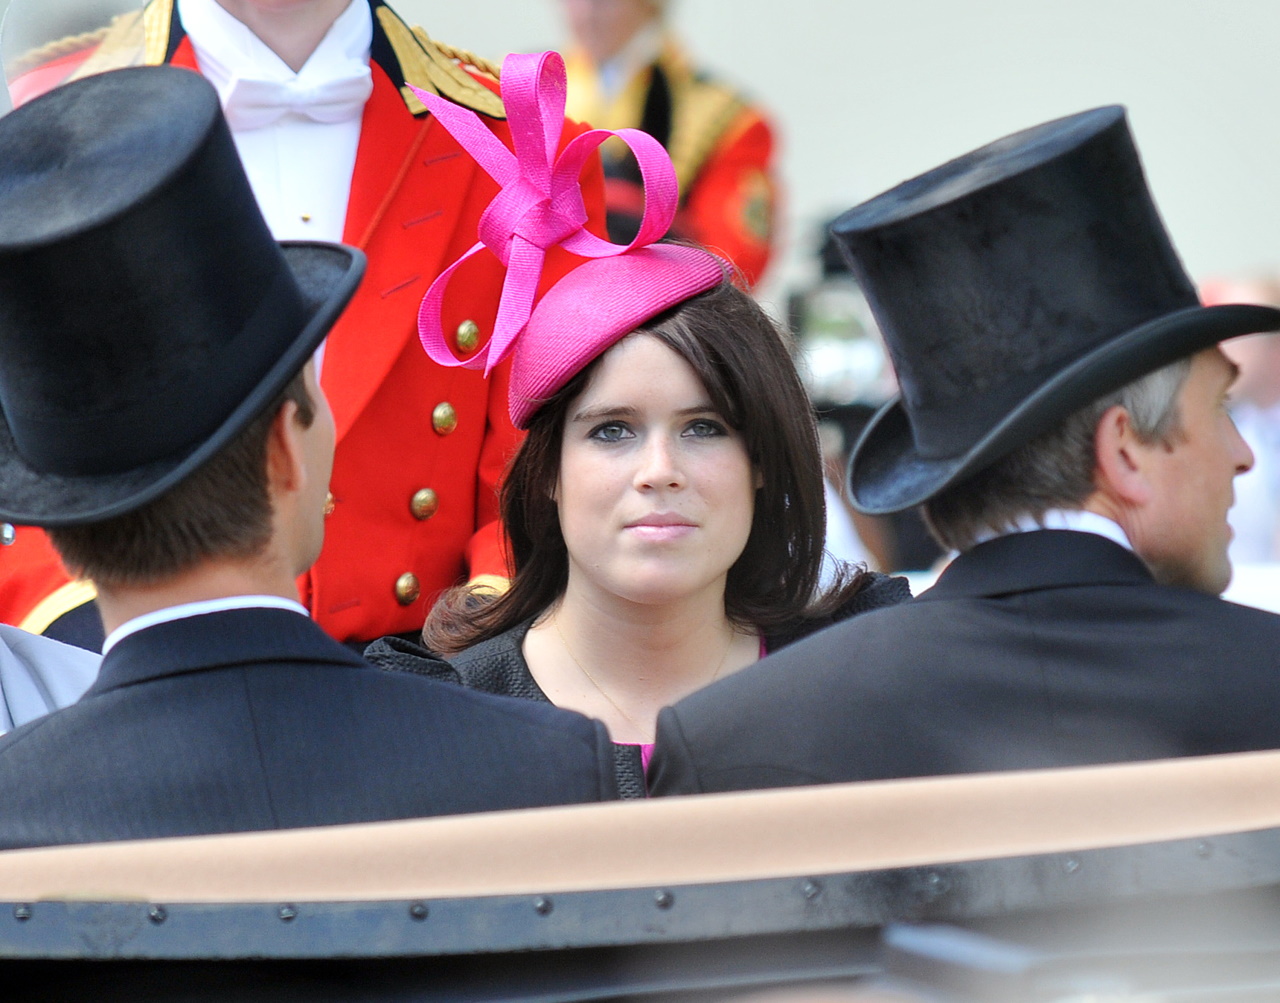 <p><strong>Принцеса Юджини</strong></p>

<p>От 1711 г. конните състезания Royal Ascot са определяни като едно от най-ексклузивните годишни събития в календара на британското общество. През 2010 г. принцеса Юджини прикова погледите с тази ярко розова шапка във формата на голяма панделка.</p>